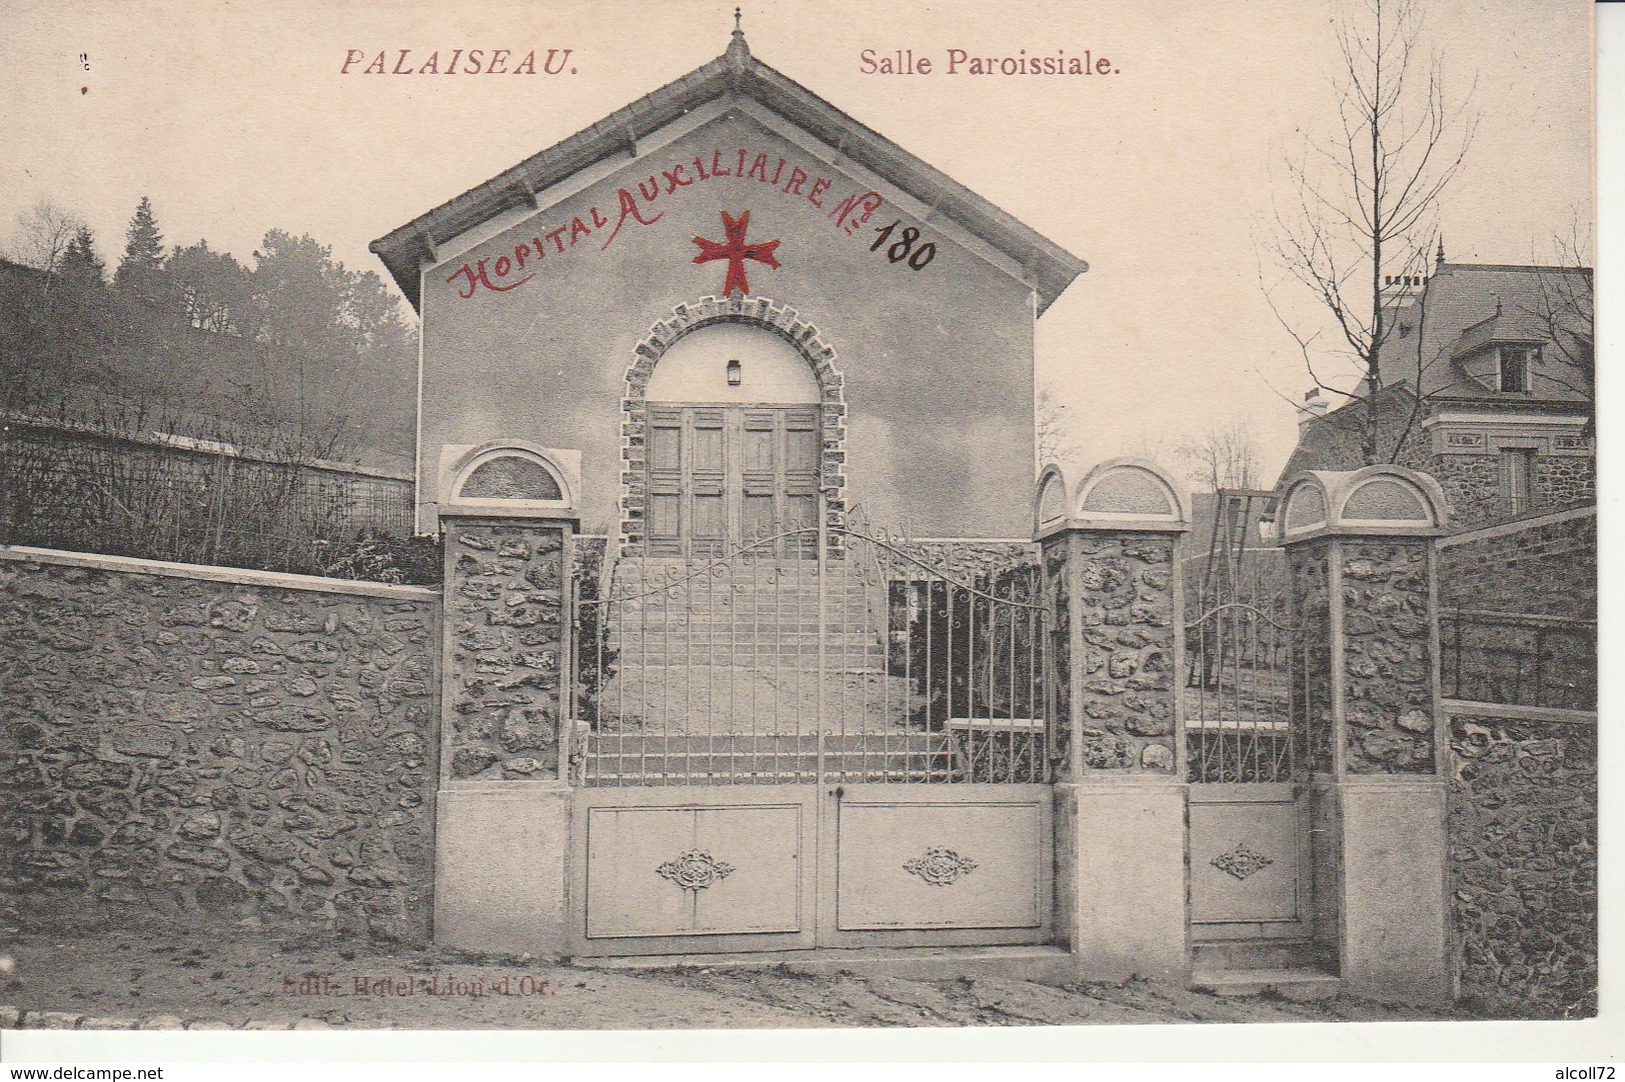 Palaiseau-Salle Paroissiale-Hôpital Auxiliaire No 180. - Palaiseau